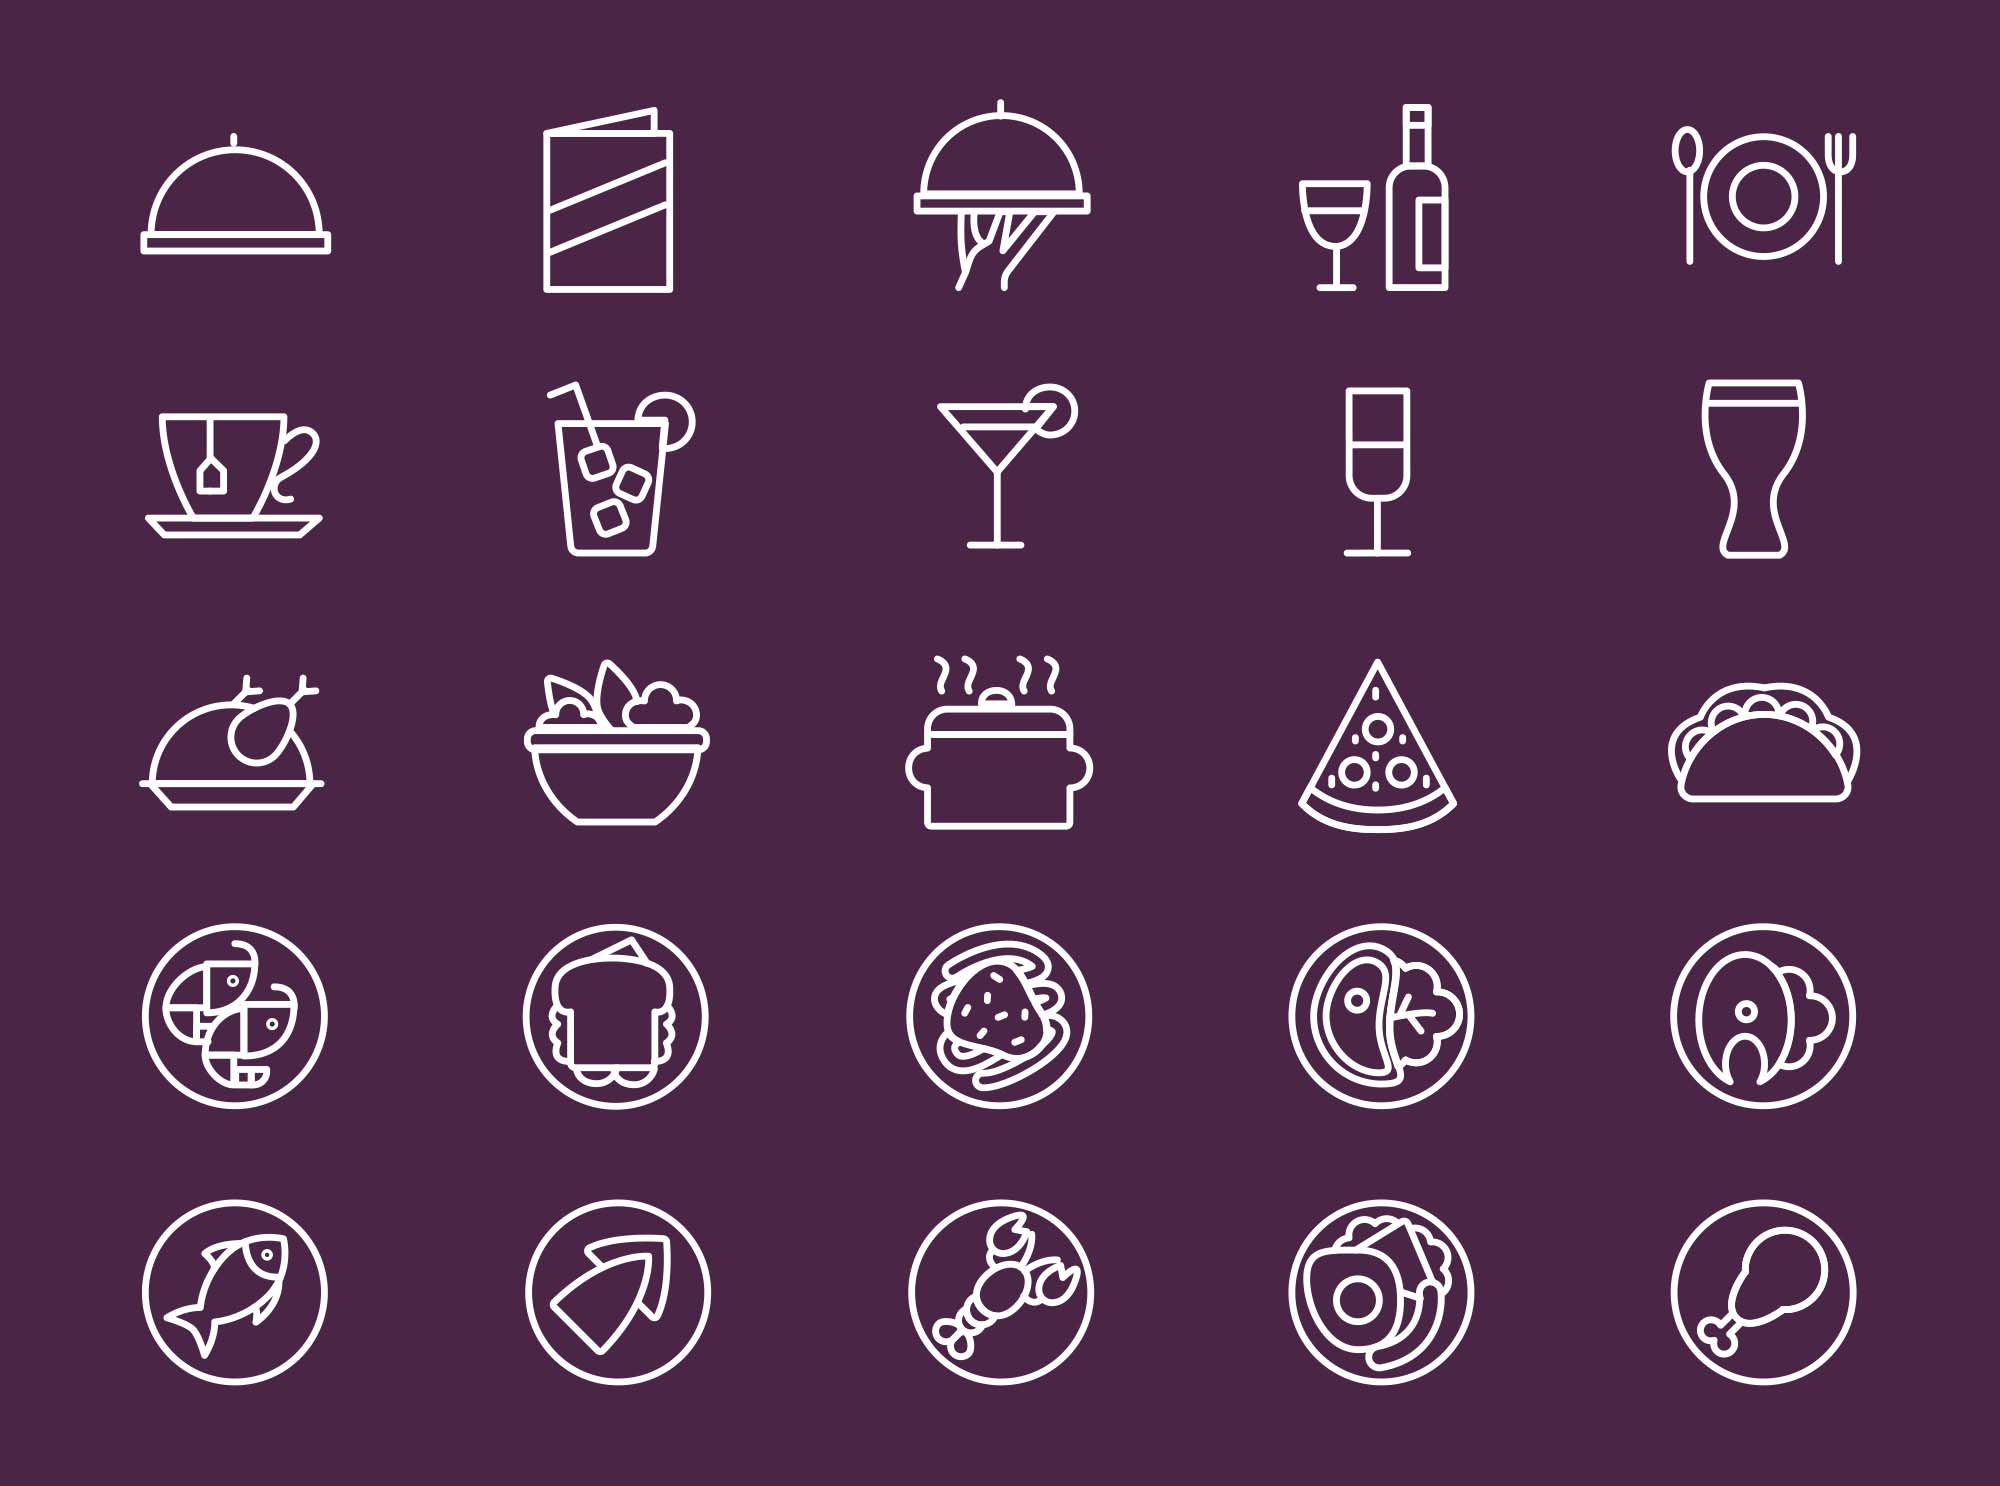 25枚餐厅菜单设计 可用的矢量线性蚂蚁素材精选图标 25 Restaurant Menu Icons插图